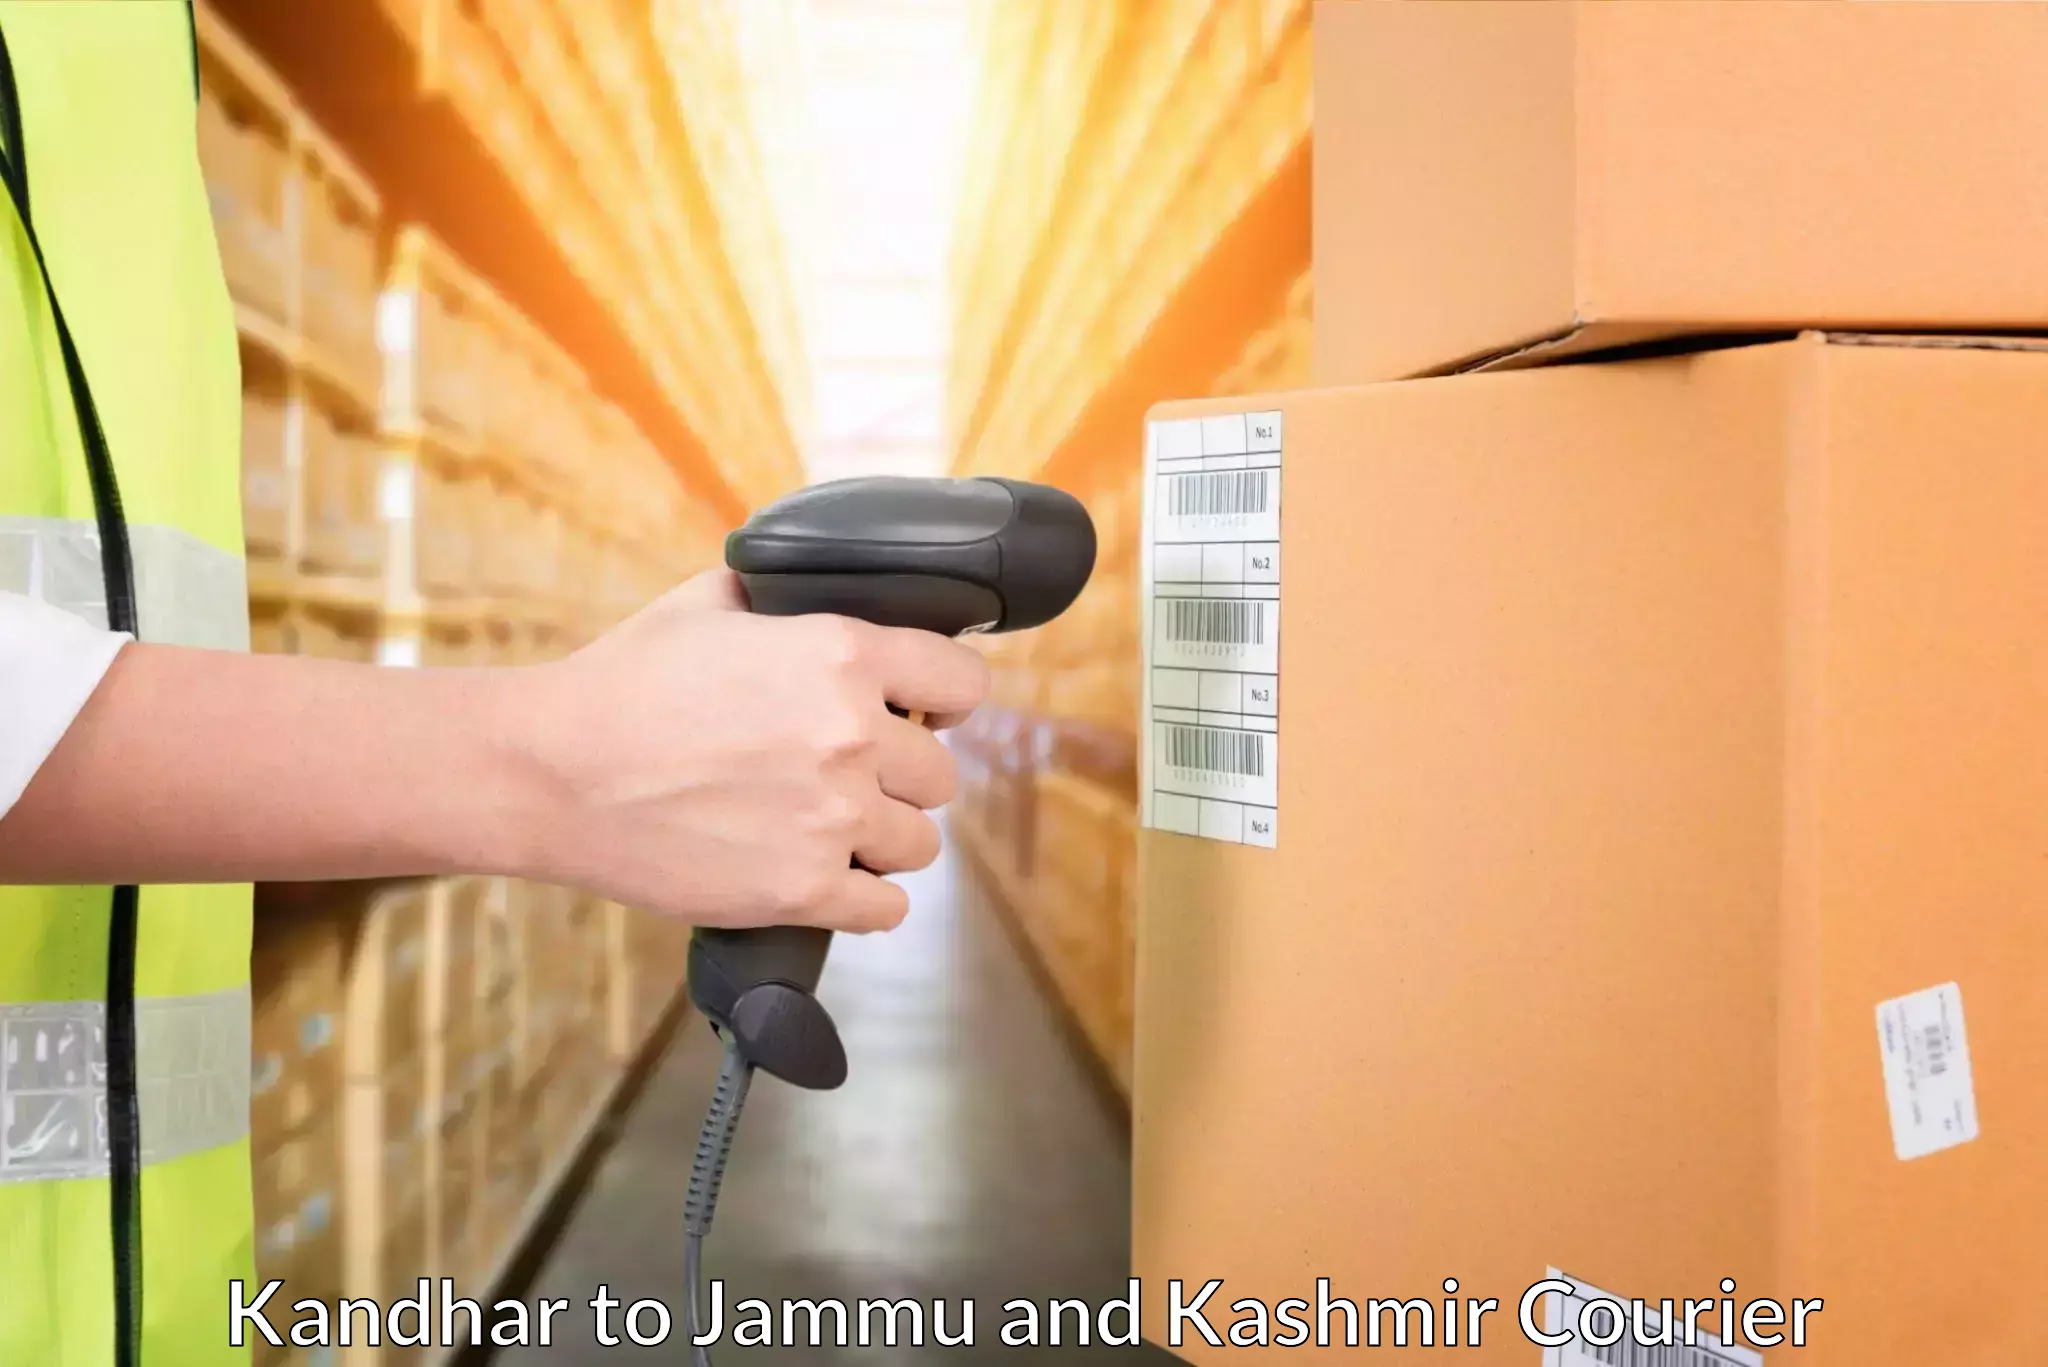 Customized shipping options Kandhar to Pulwama